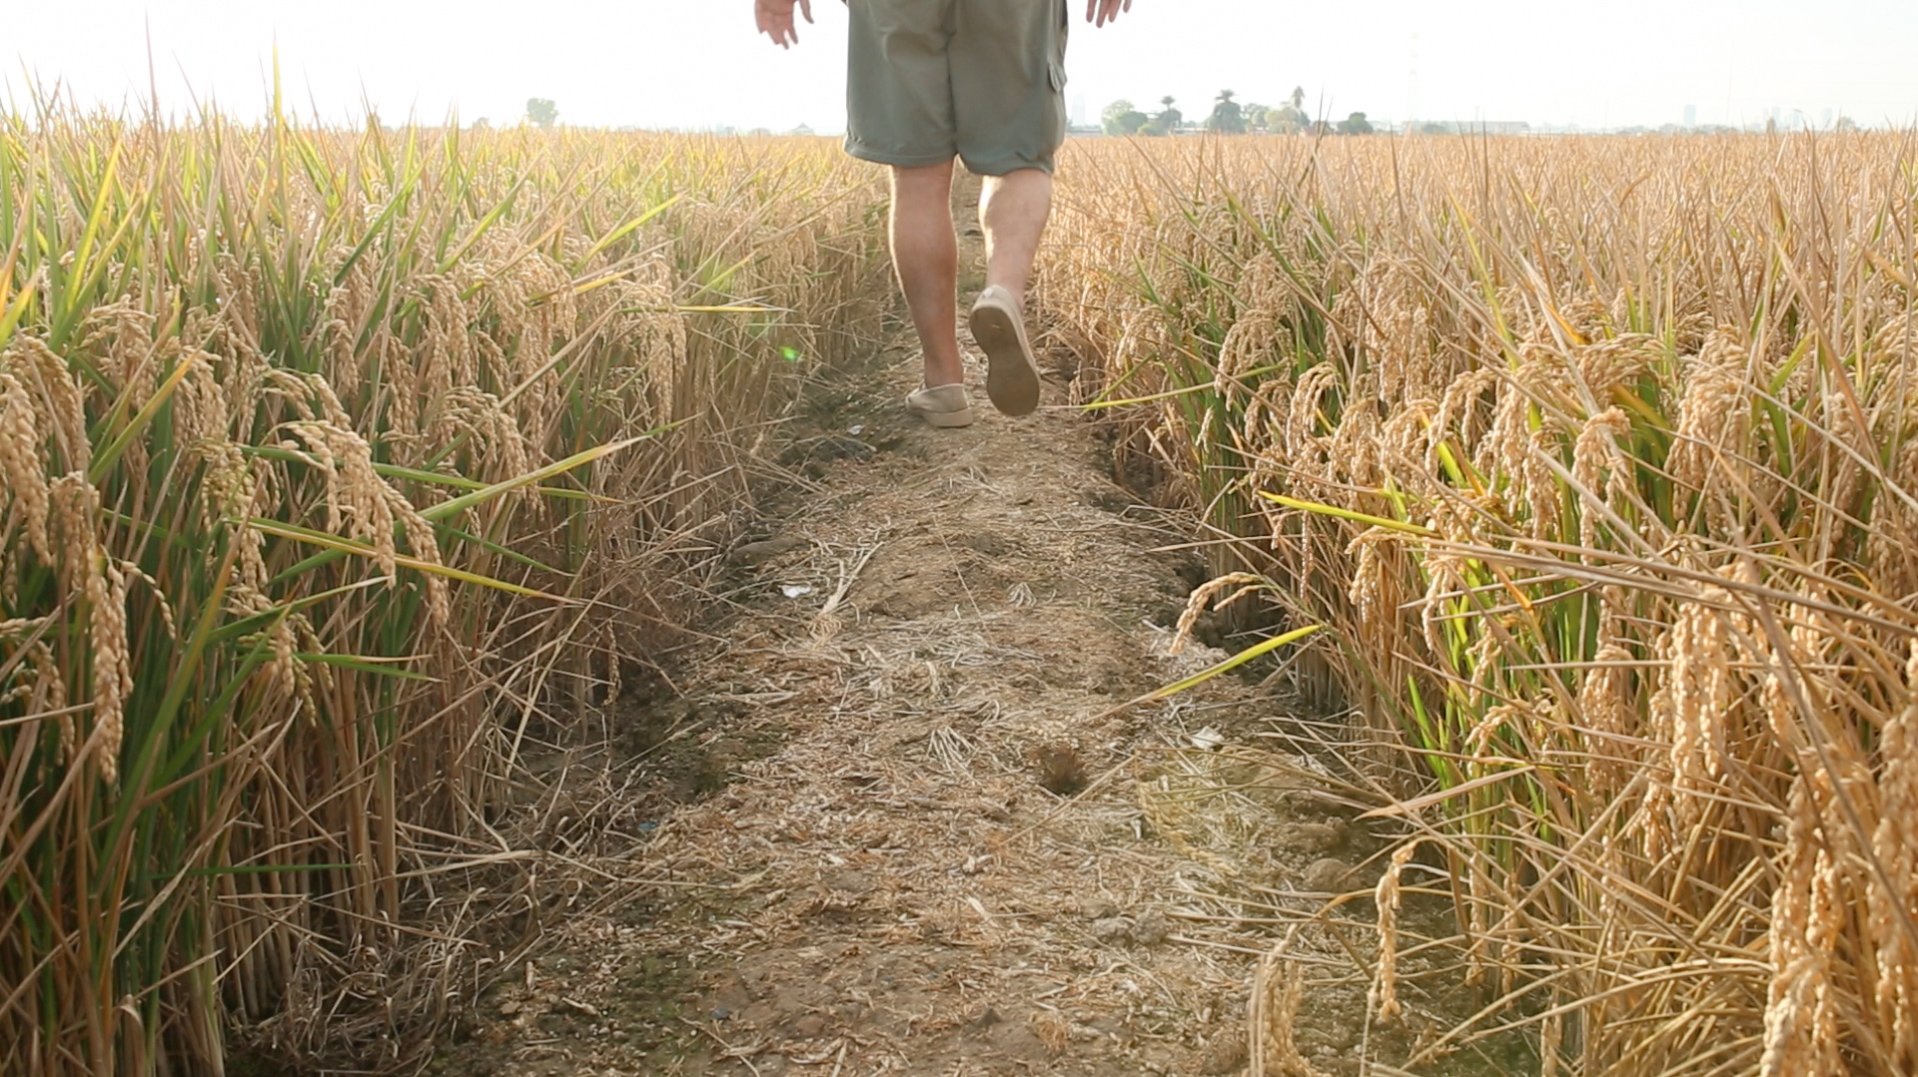 Man walking through rice fields